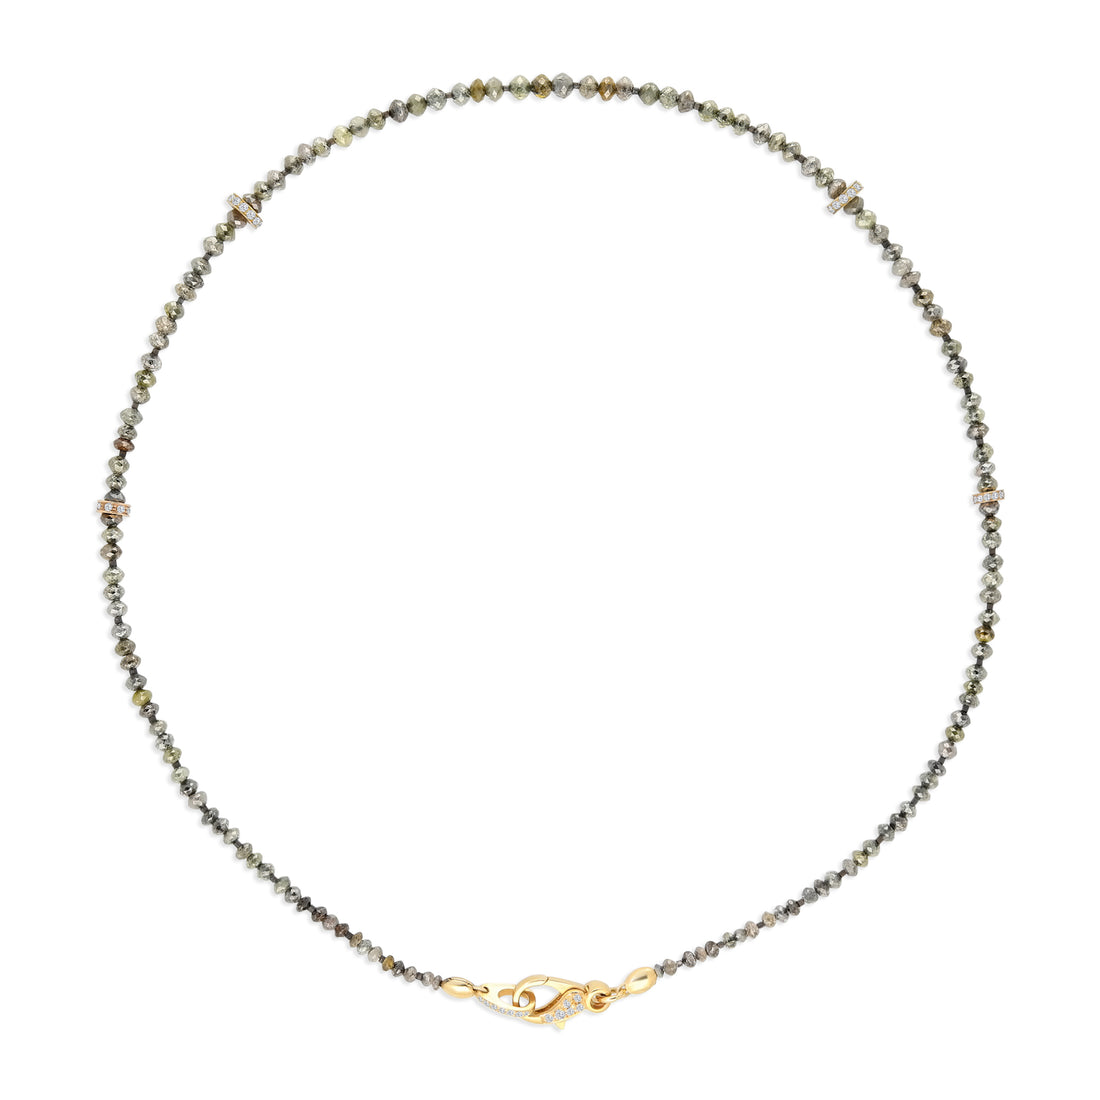 Multicolor Diamond Beaded Necklace - 47.9 Carat